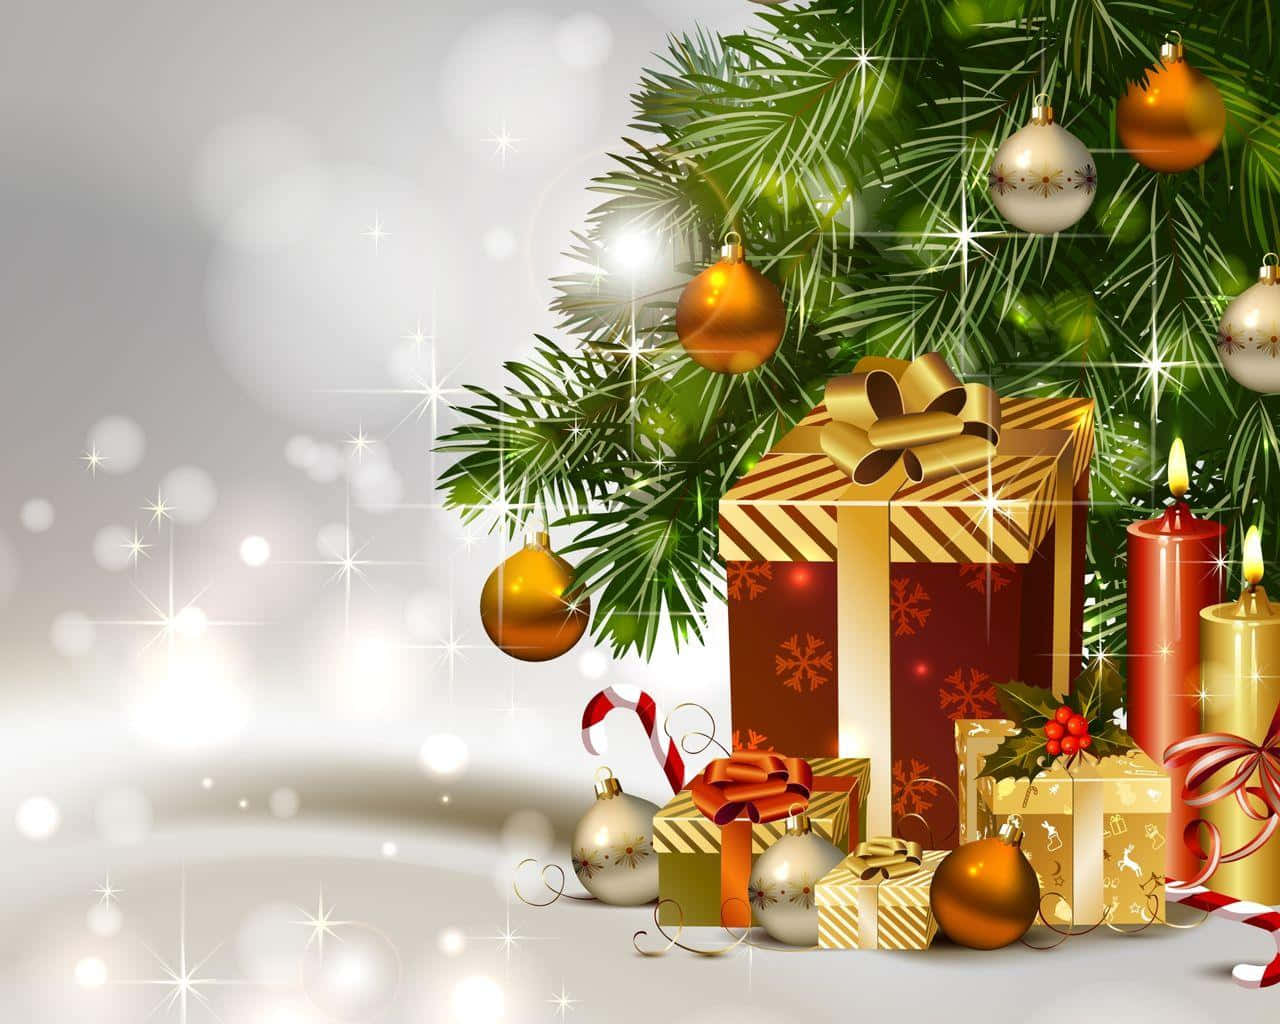 Spread the joy of Christmas with a festive card!